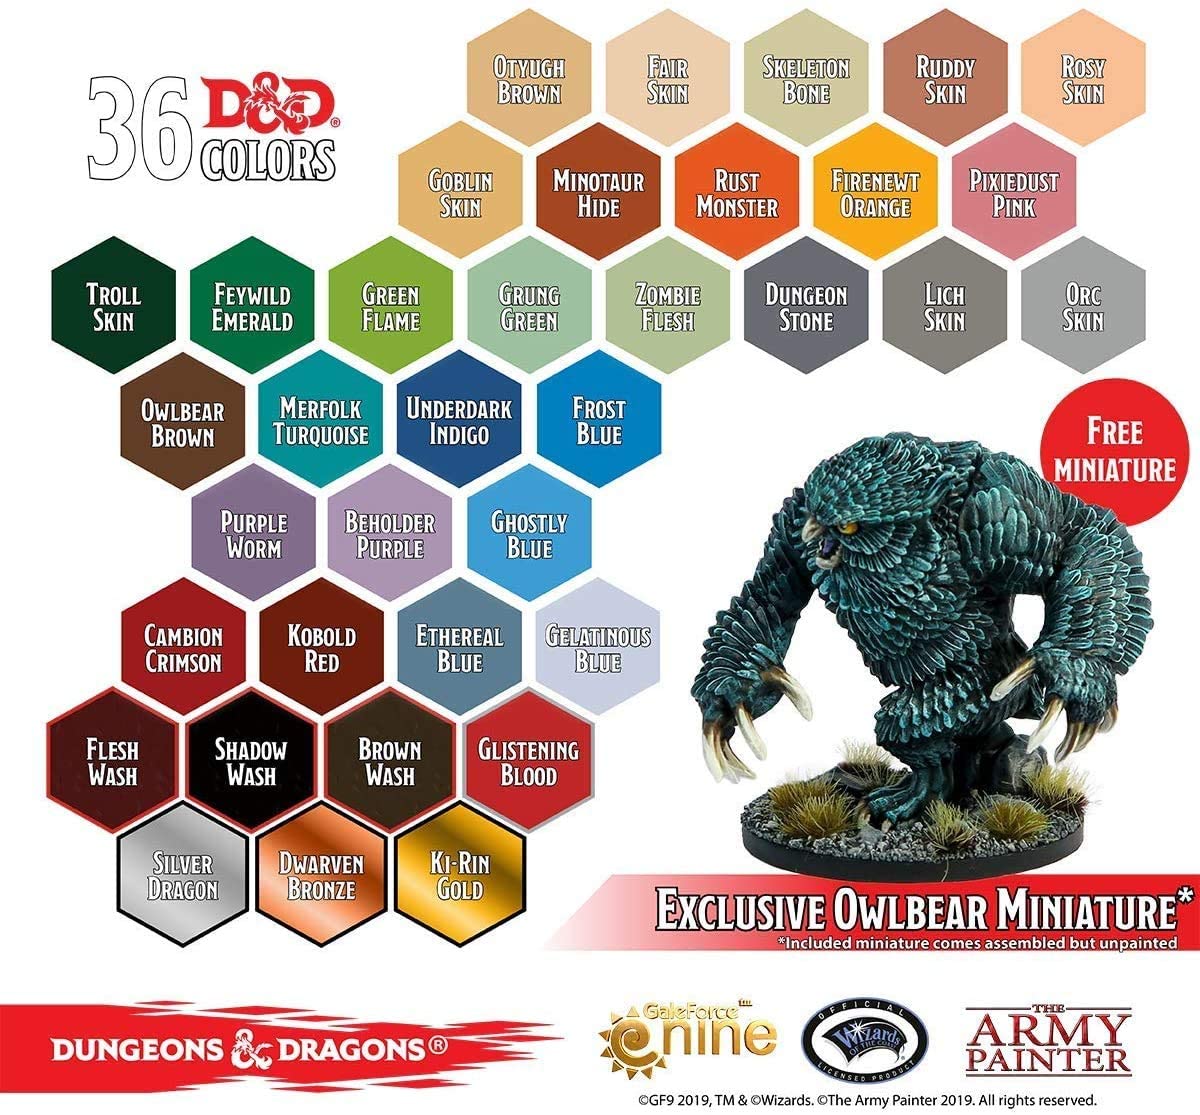 The Army Painter - D&D: Monsters Paint Set